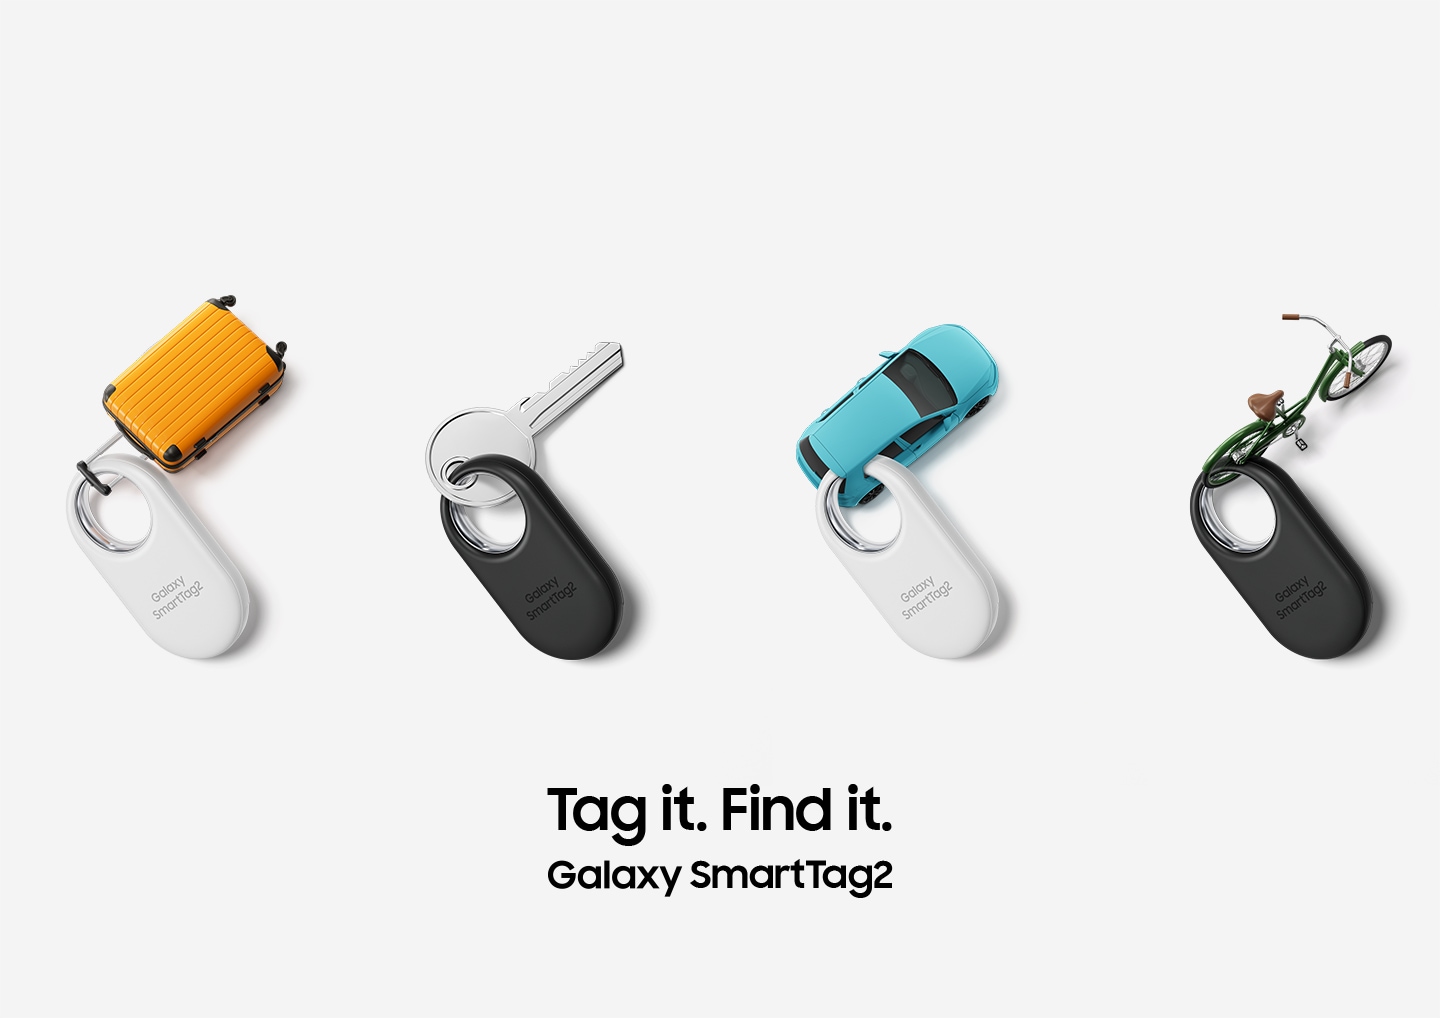 Cuatro dispositivos Galaxy SmartTag2, dos en blanco y dos en negro, están cuidadosamente colocados.  Los dispositivos están etiquetados con los siguientes elementos: una maleta en miniatura, una llave, un coche en miniatura y una bicicleta en miniatura.